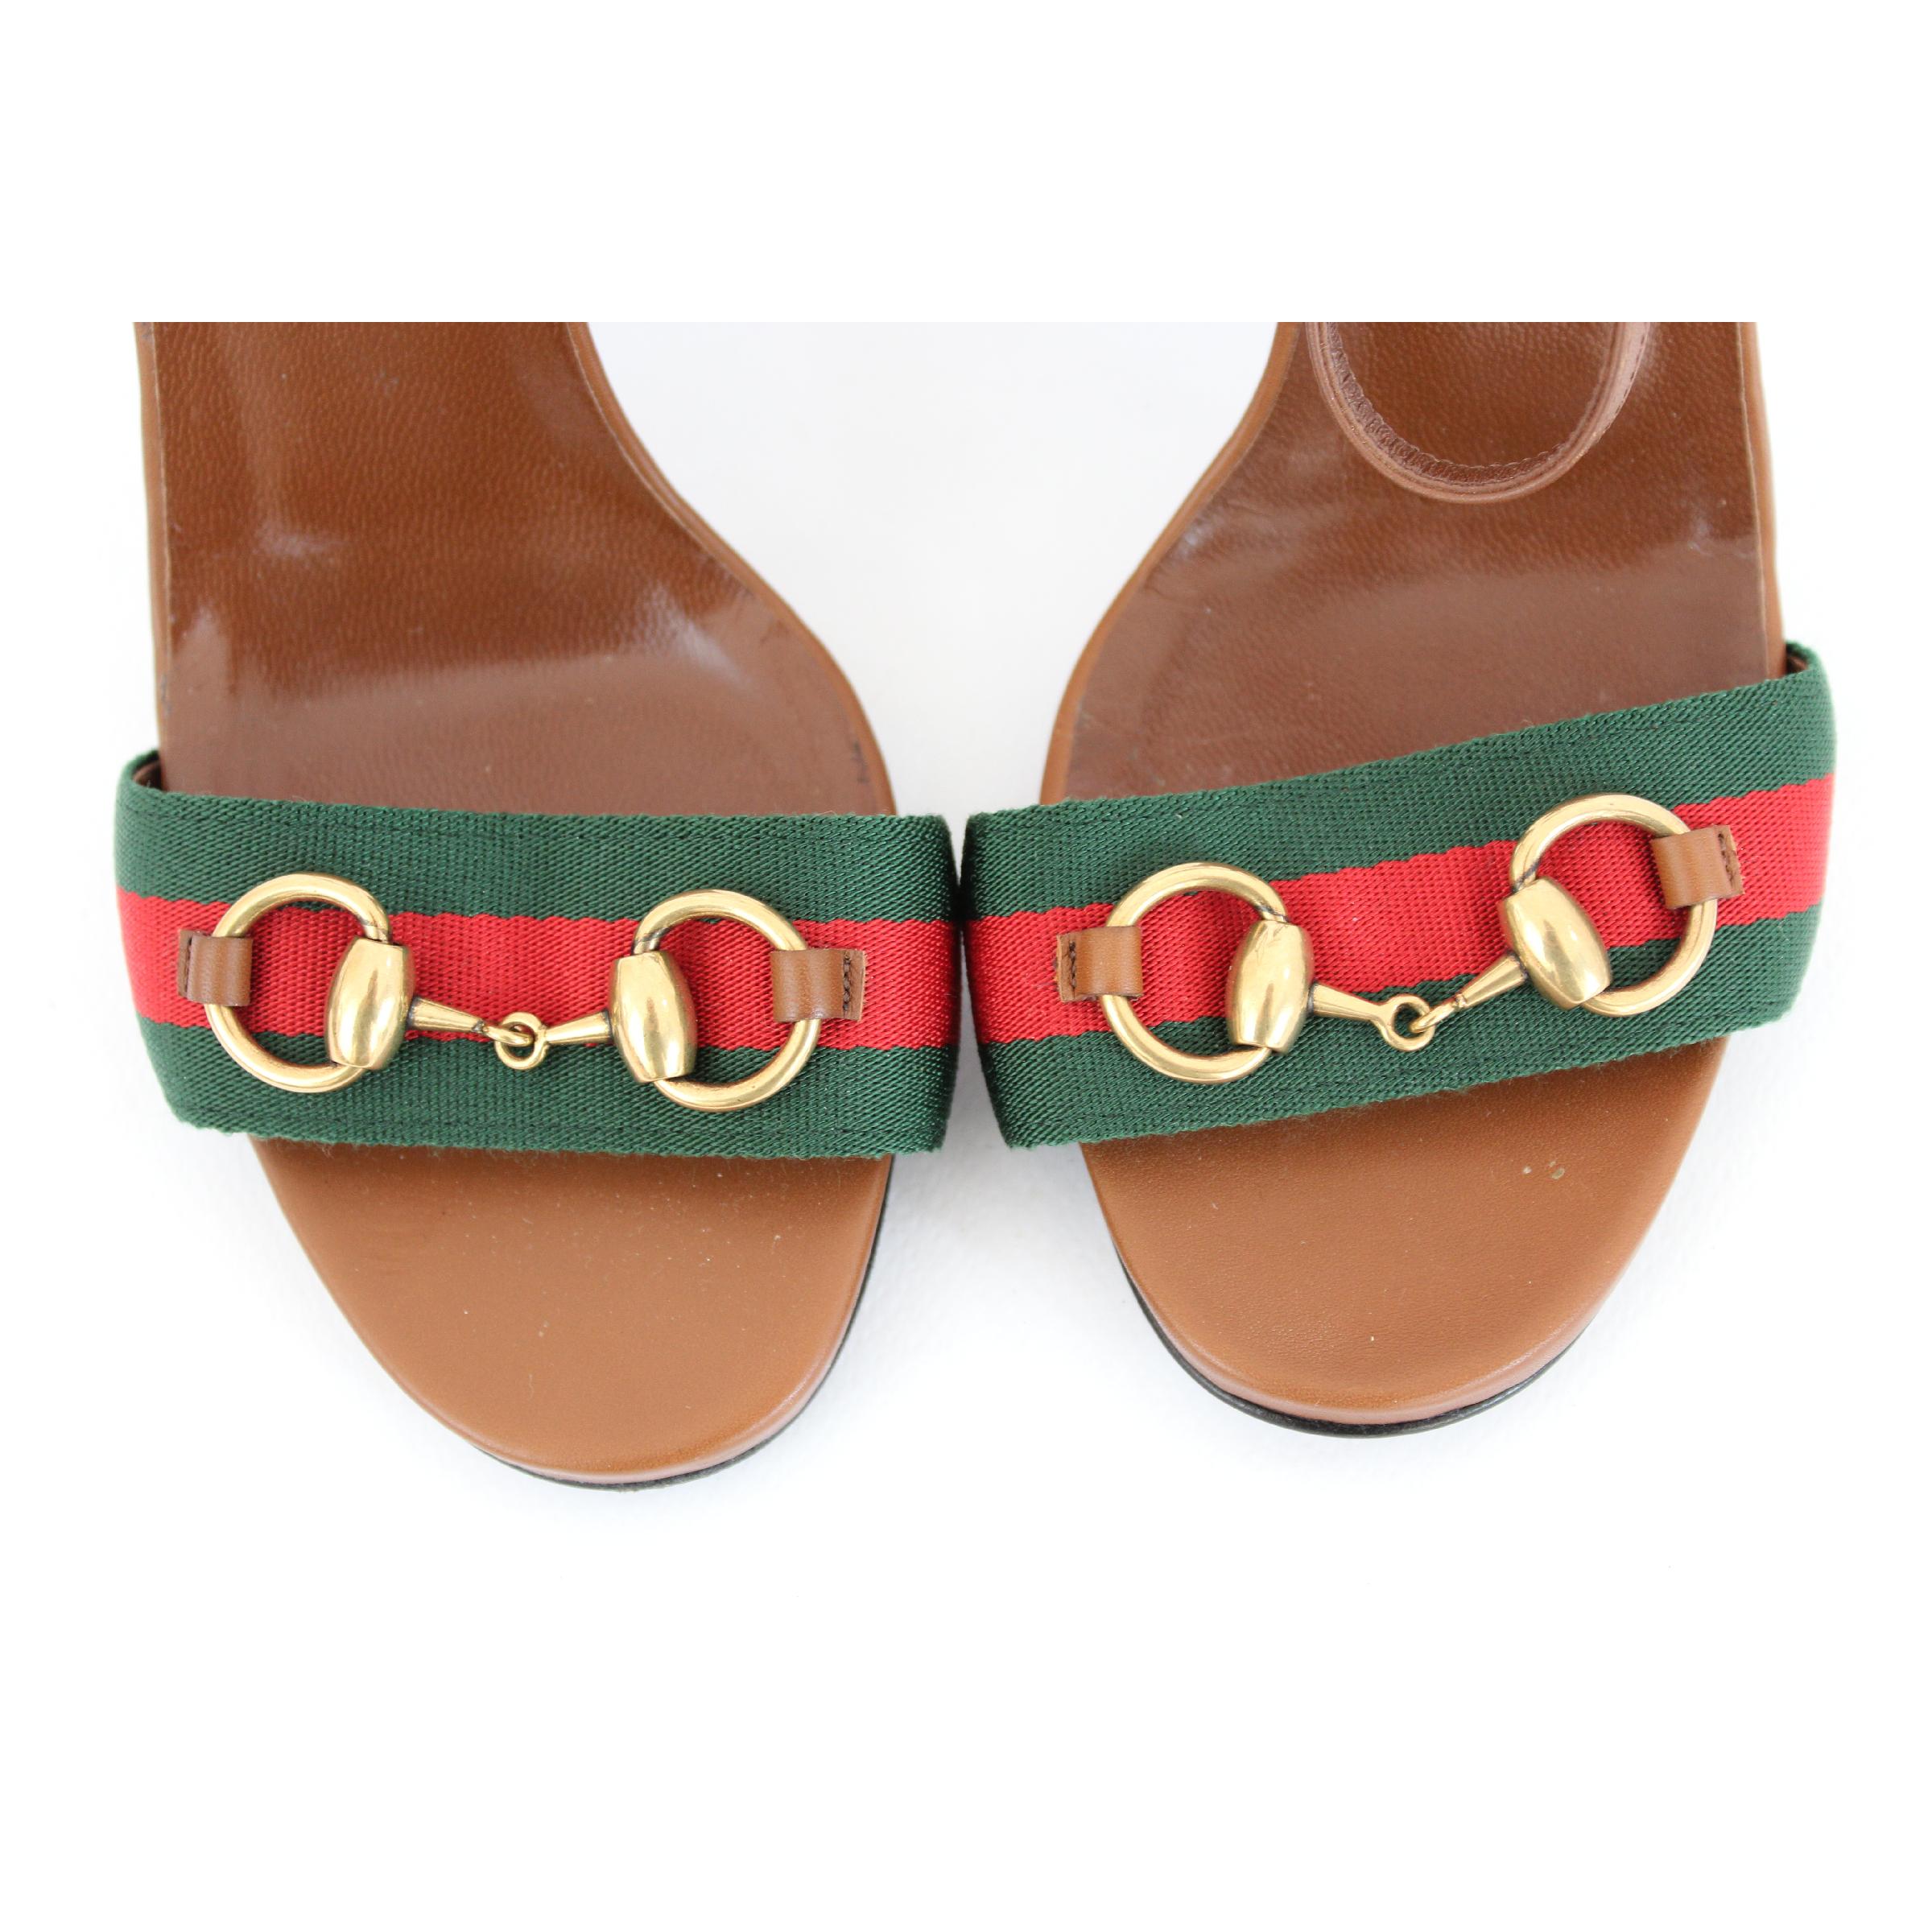 Nouveau Gucci Lifford Brown Leather Canvas Sandals Heels Pump Shoes 5